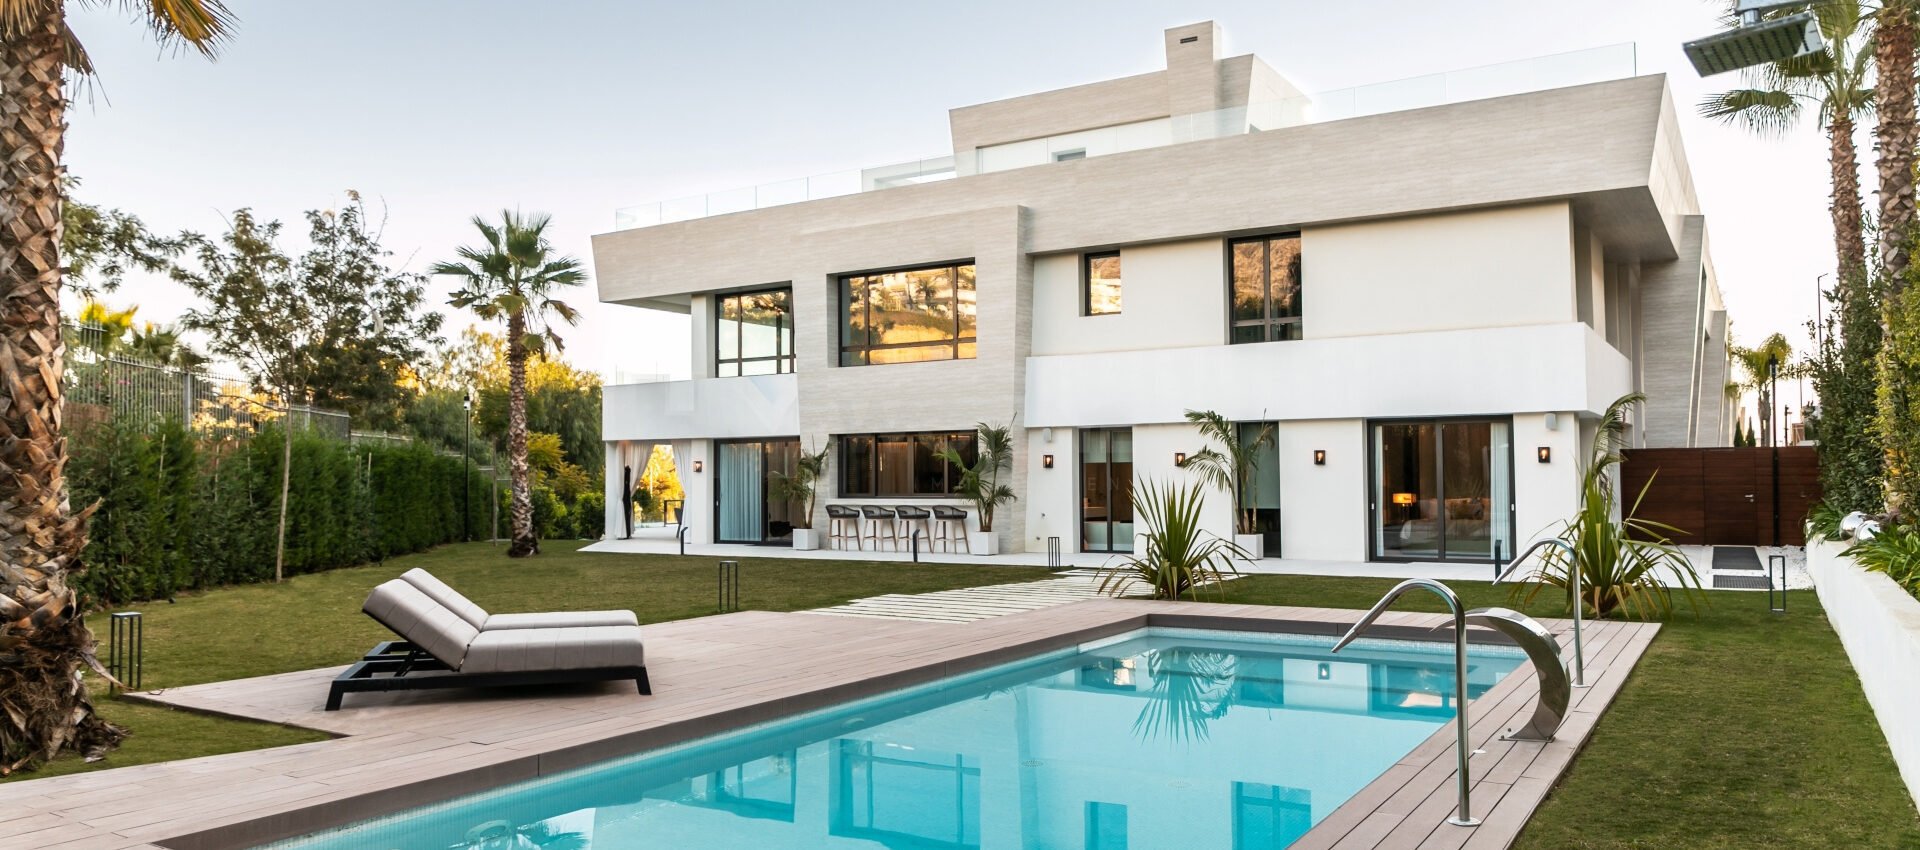 Luxuriöse, moderne Maisonette-Wohnung an der Goldenen Meile von Marbella